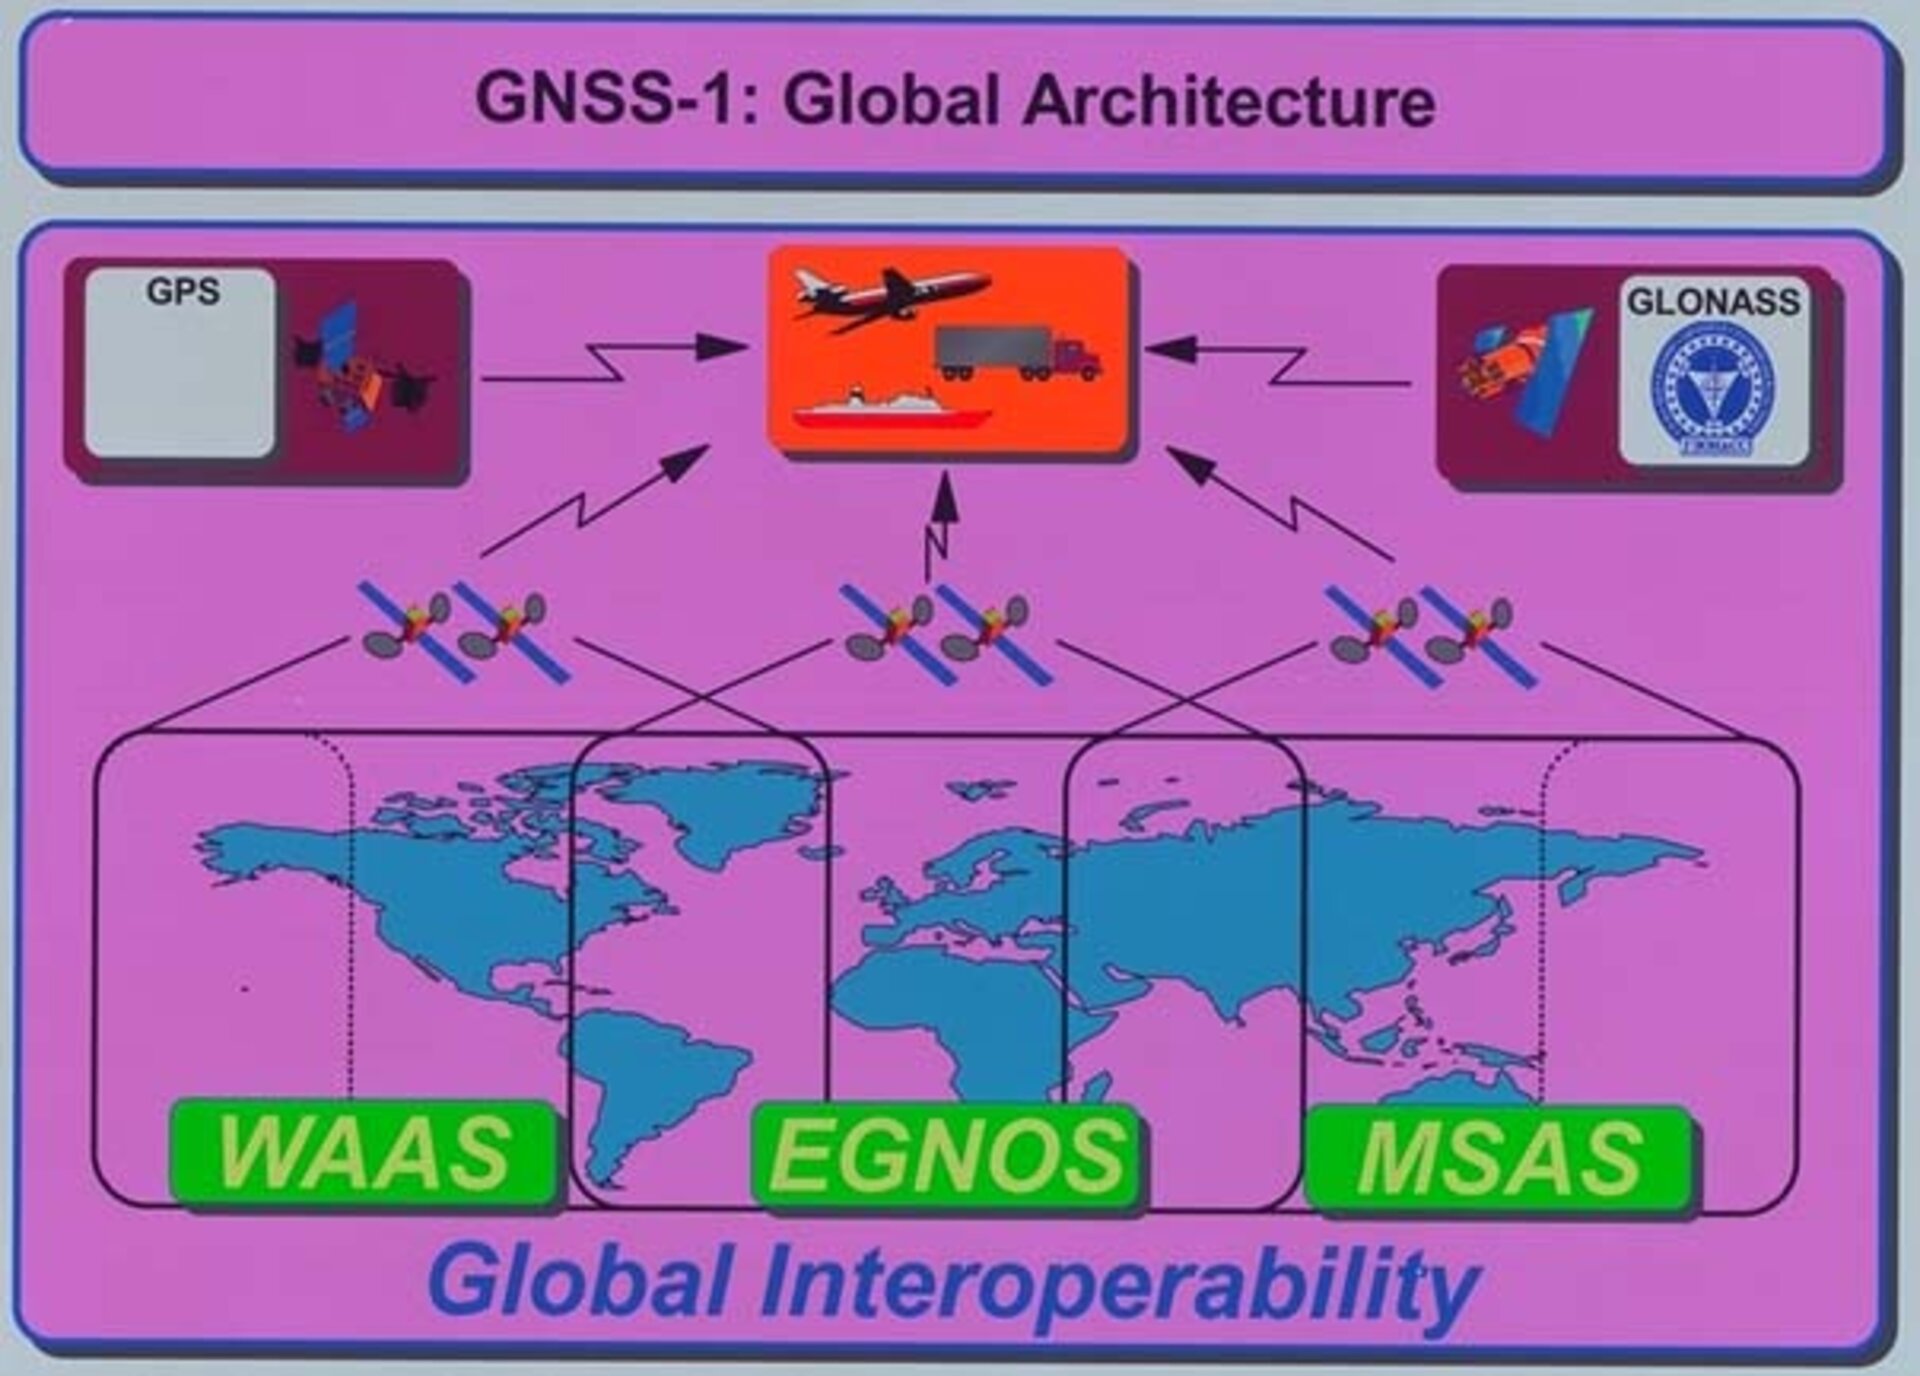 EGNOS navigation system for GNSS